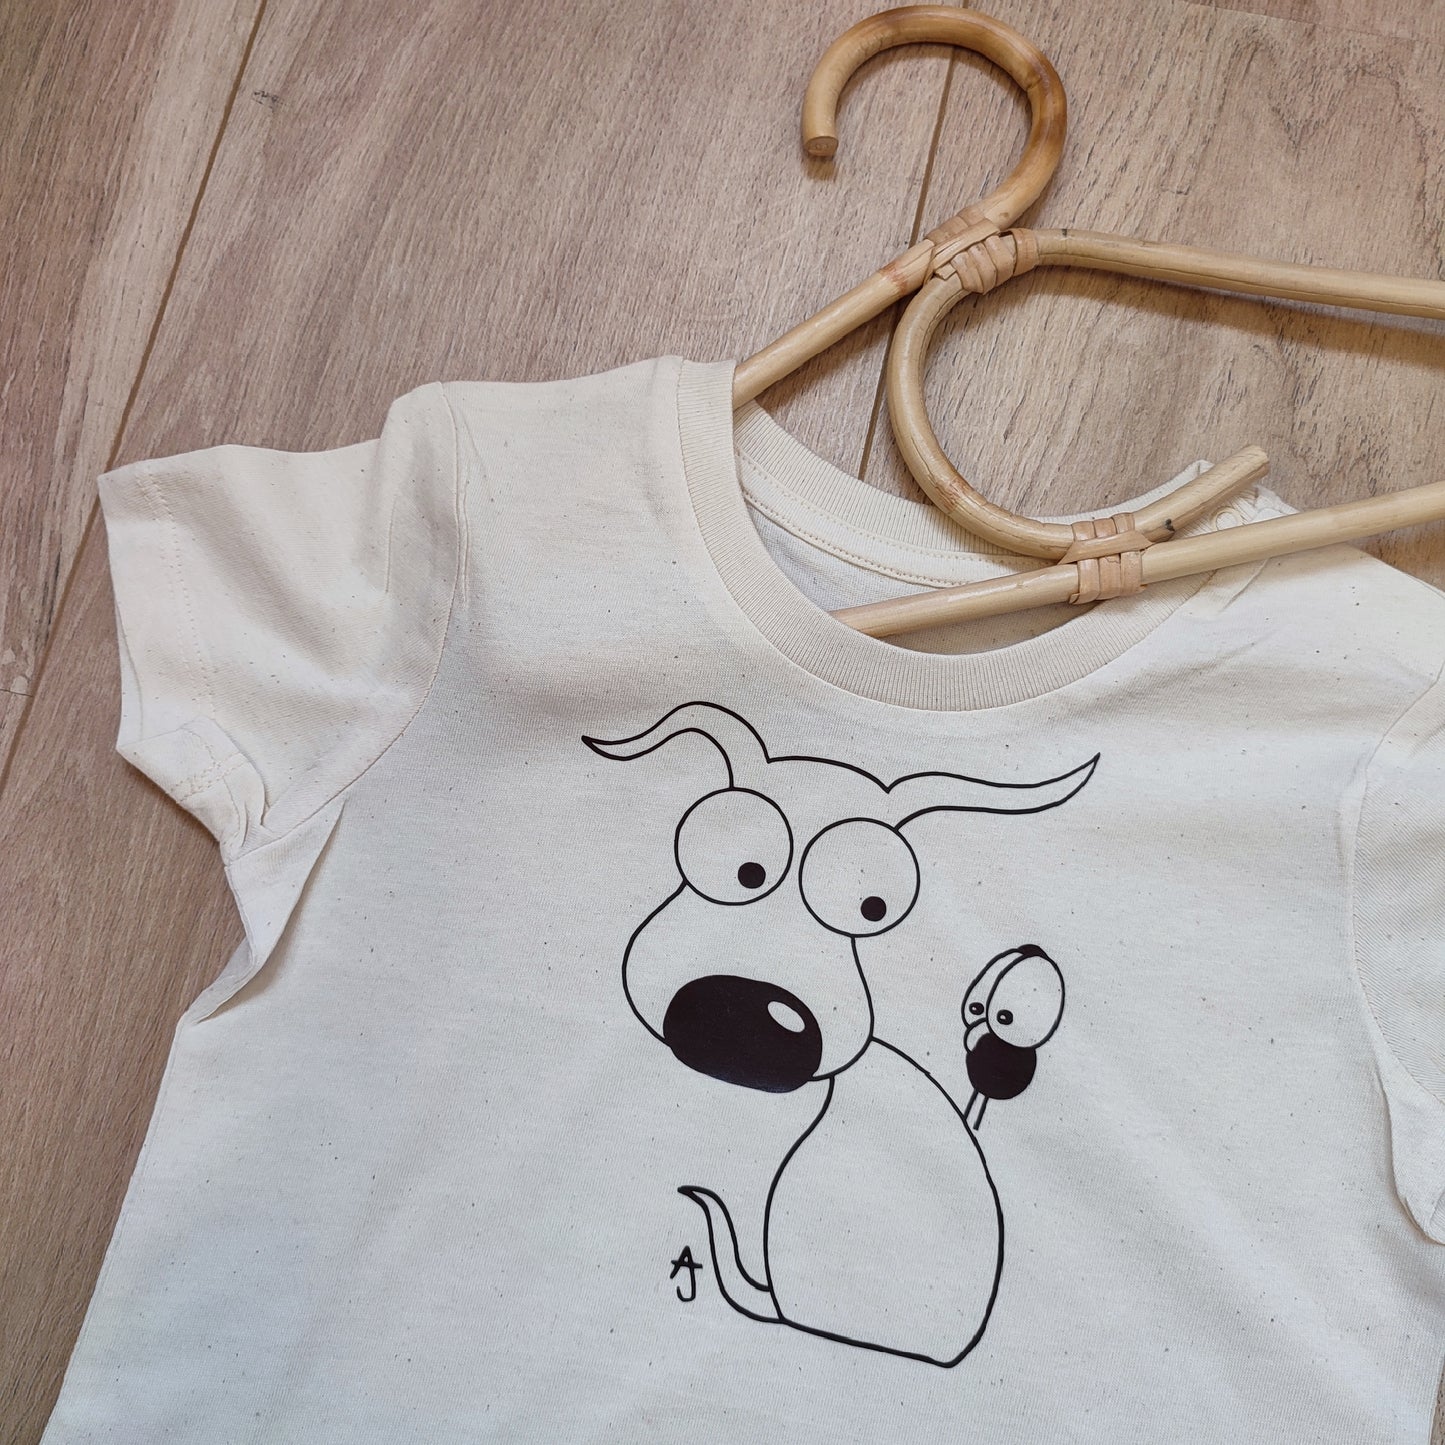 T-shirt hondje"Thibo"